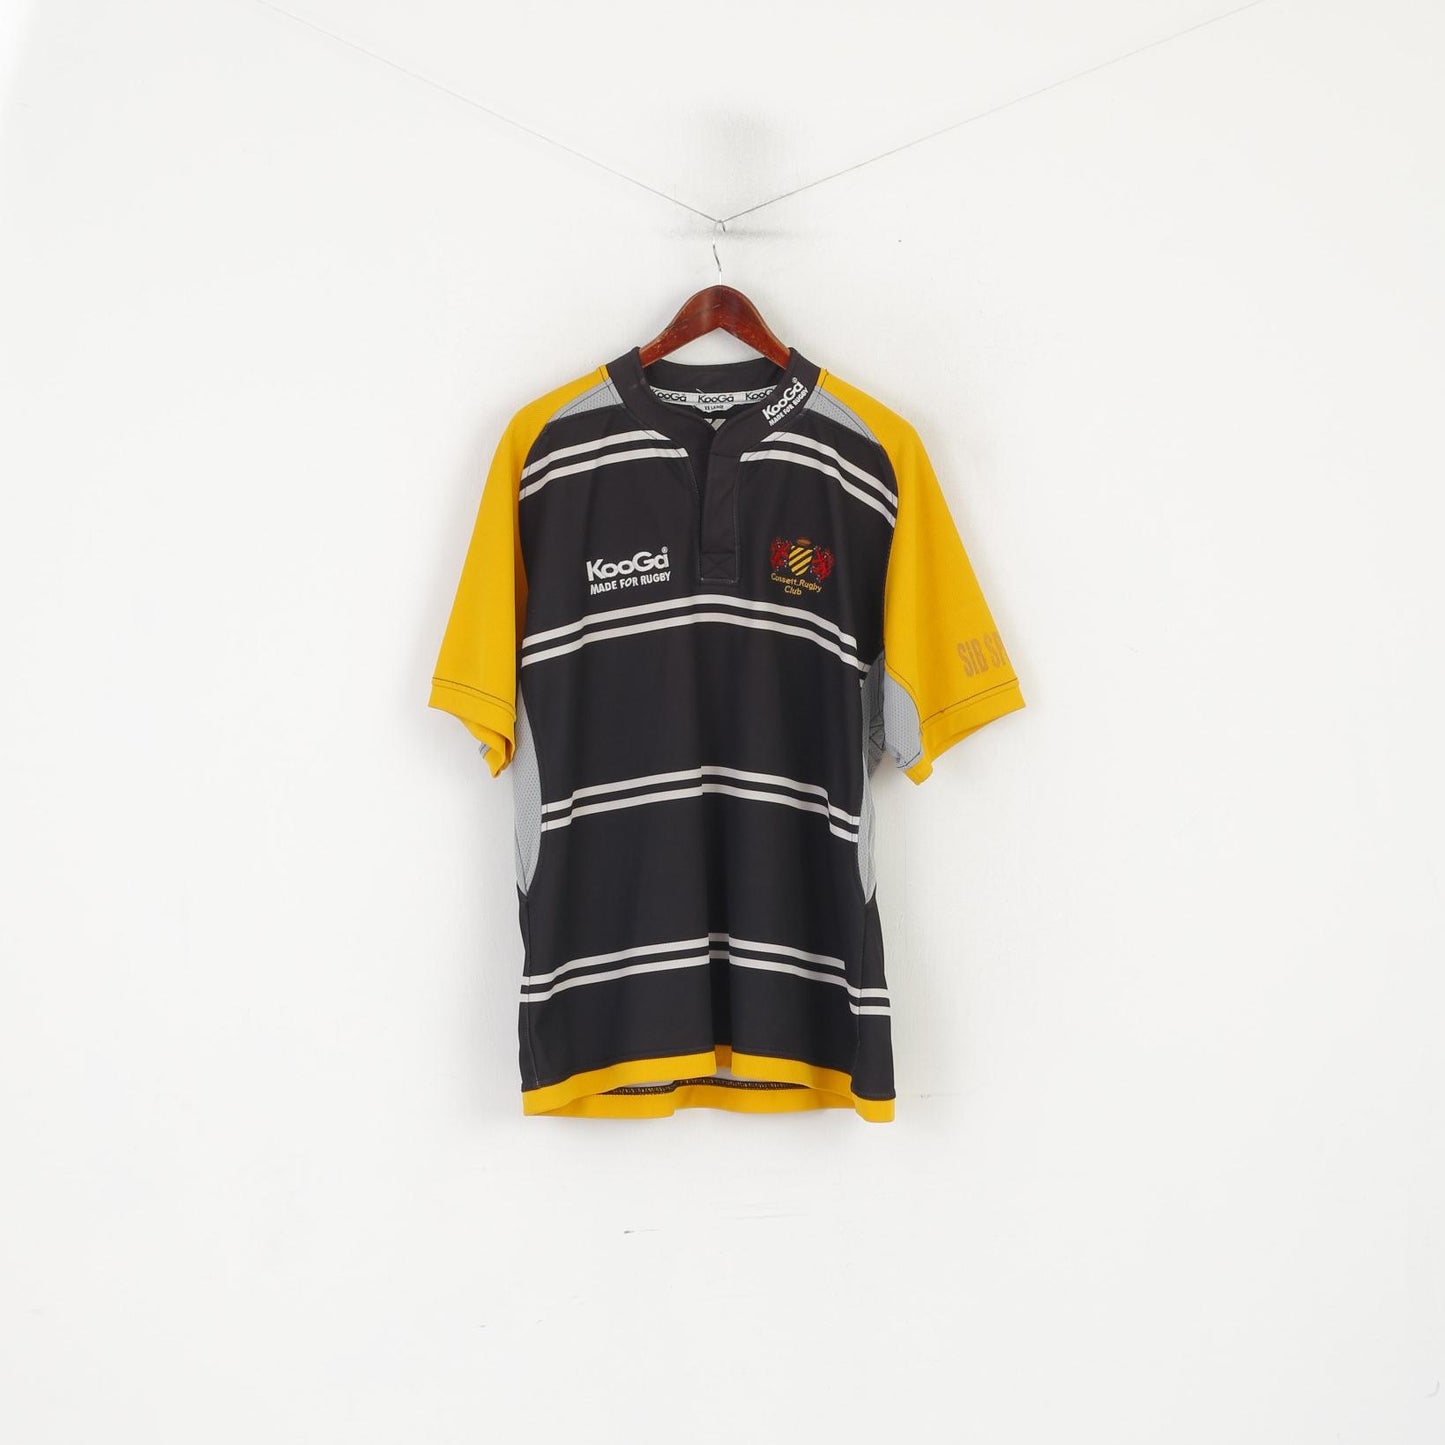 Maglia Kooga da uomo XXL nera Consett Rugby Club maglia vintage abbigliamento sportivo n. 17 Top